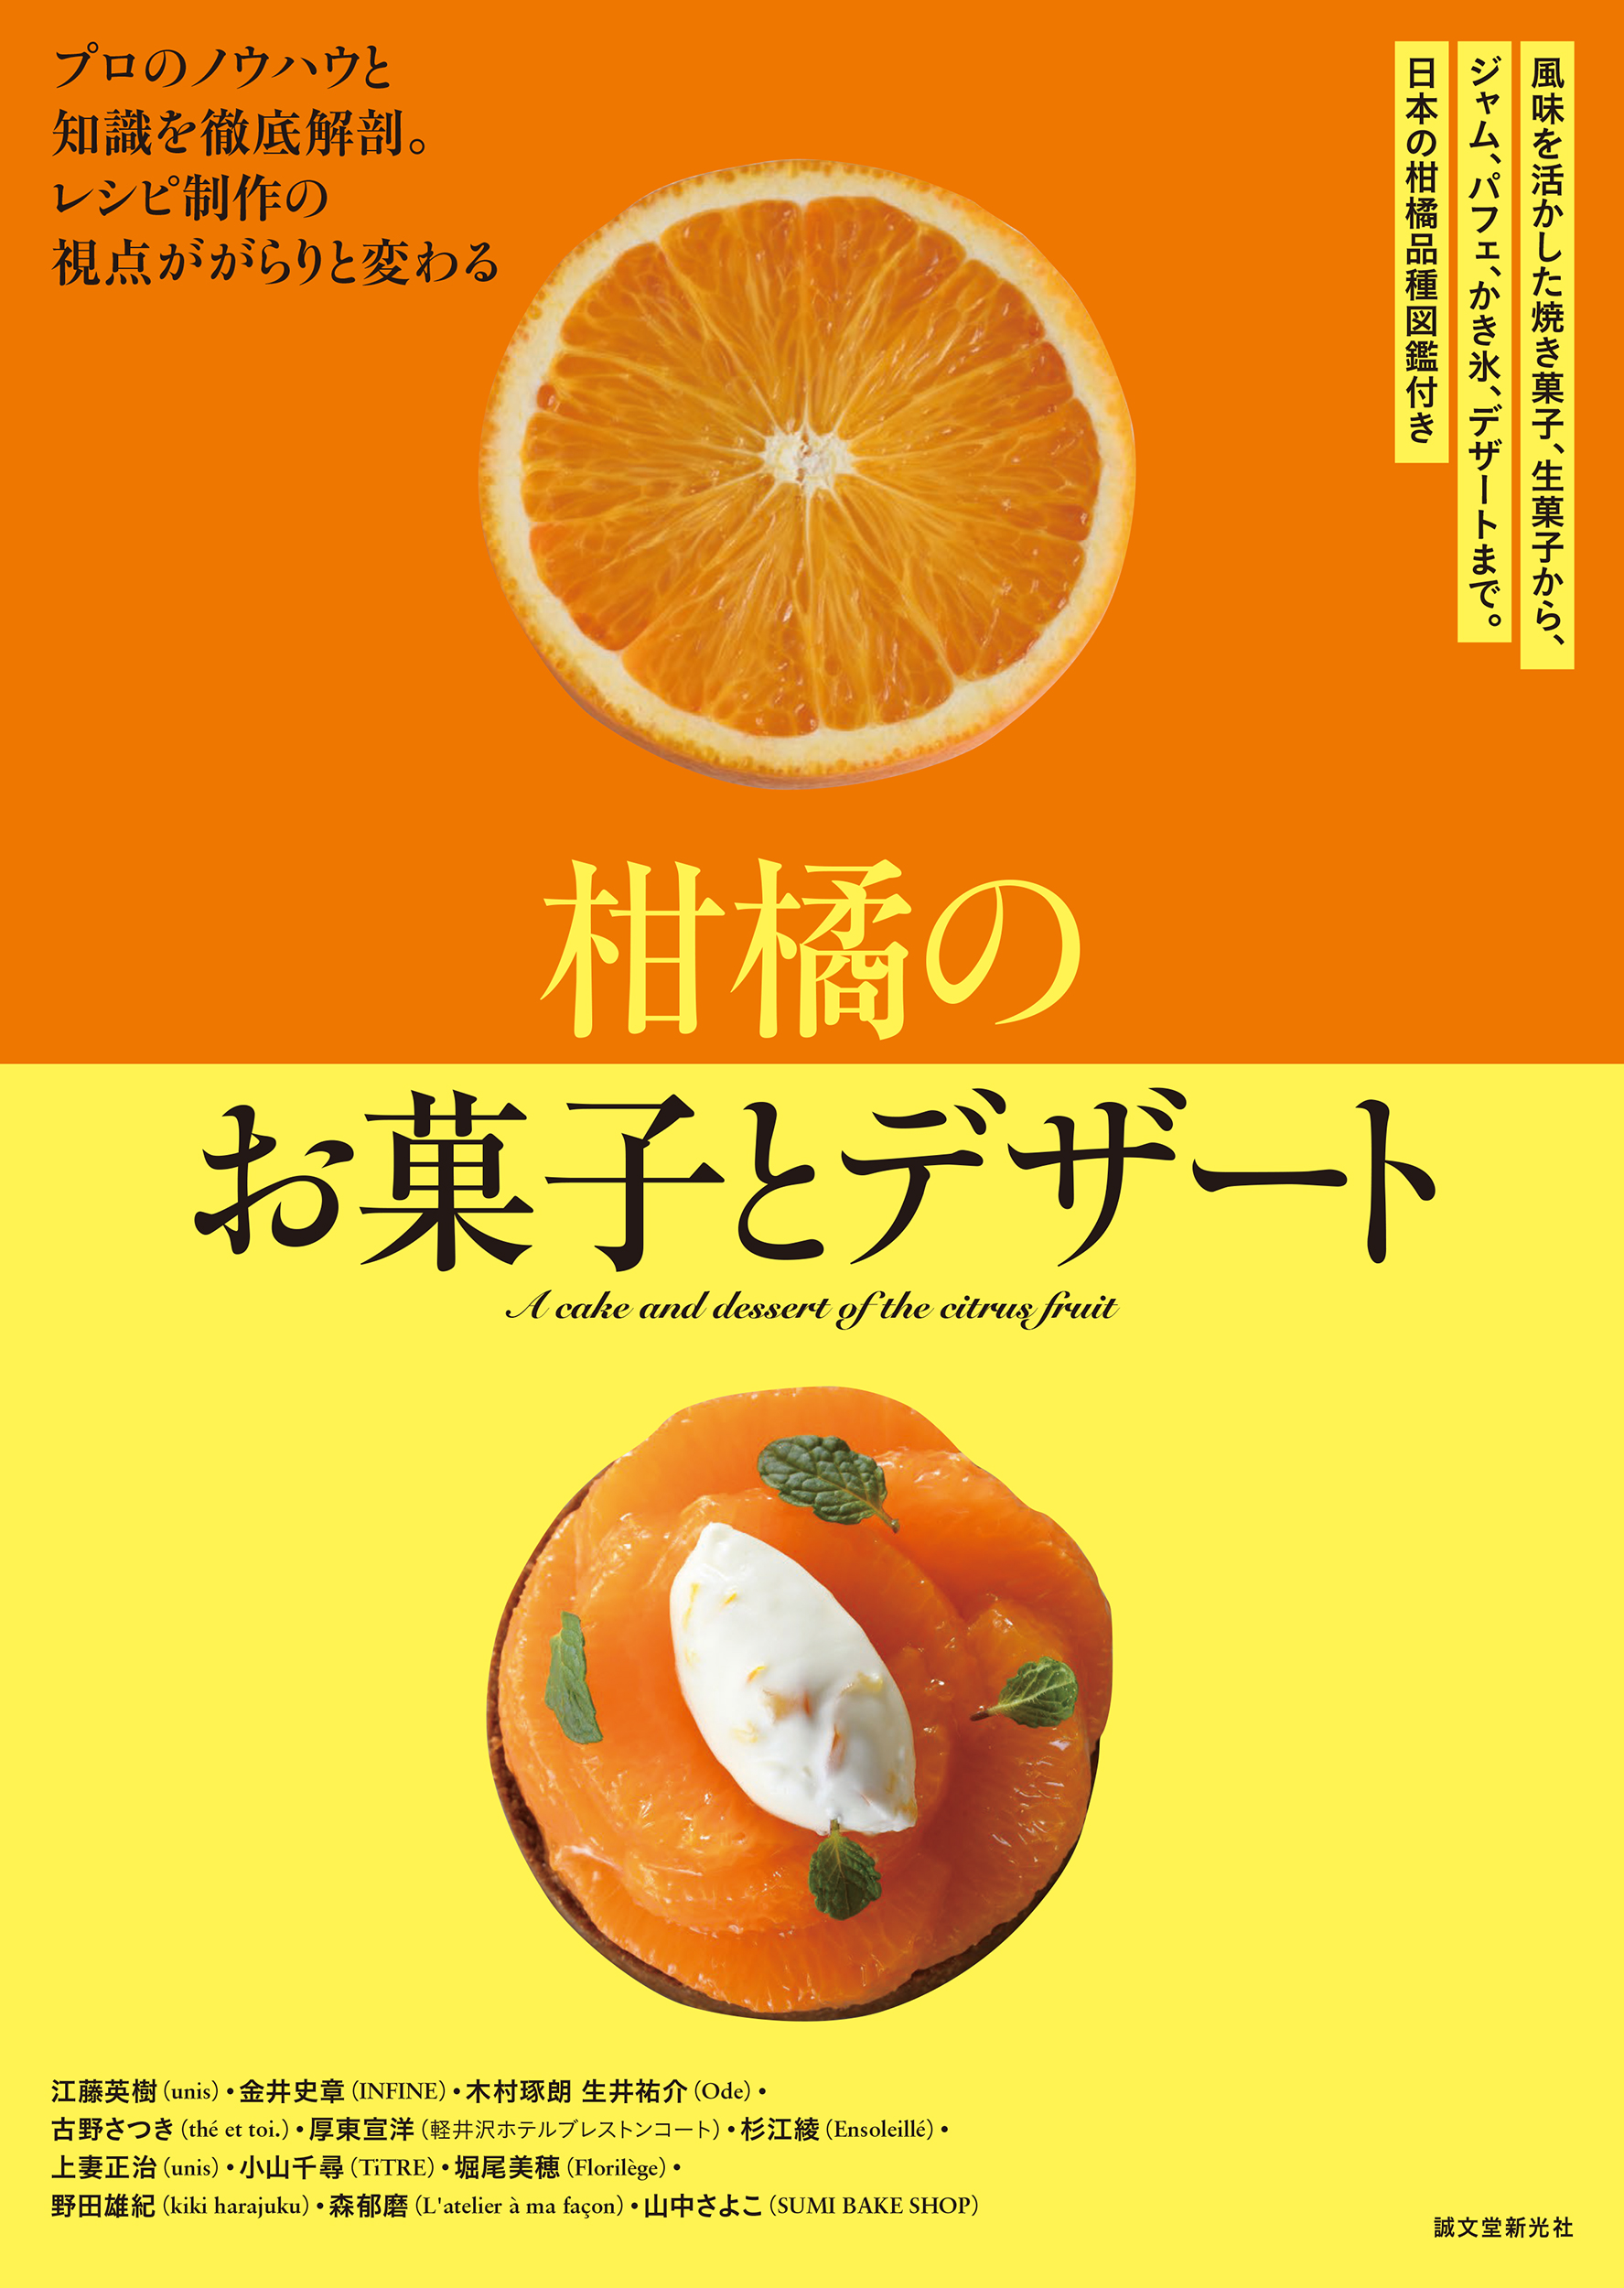 スイーツにおける柑橘の扱い方、活かし方についてのノウハウをプロパティシエがご紹介！☆多種多様な柑橘のスイーツレシピ70点以上を掲載☆のサブ画像1